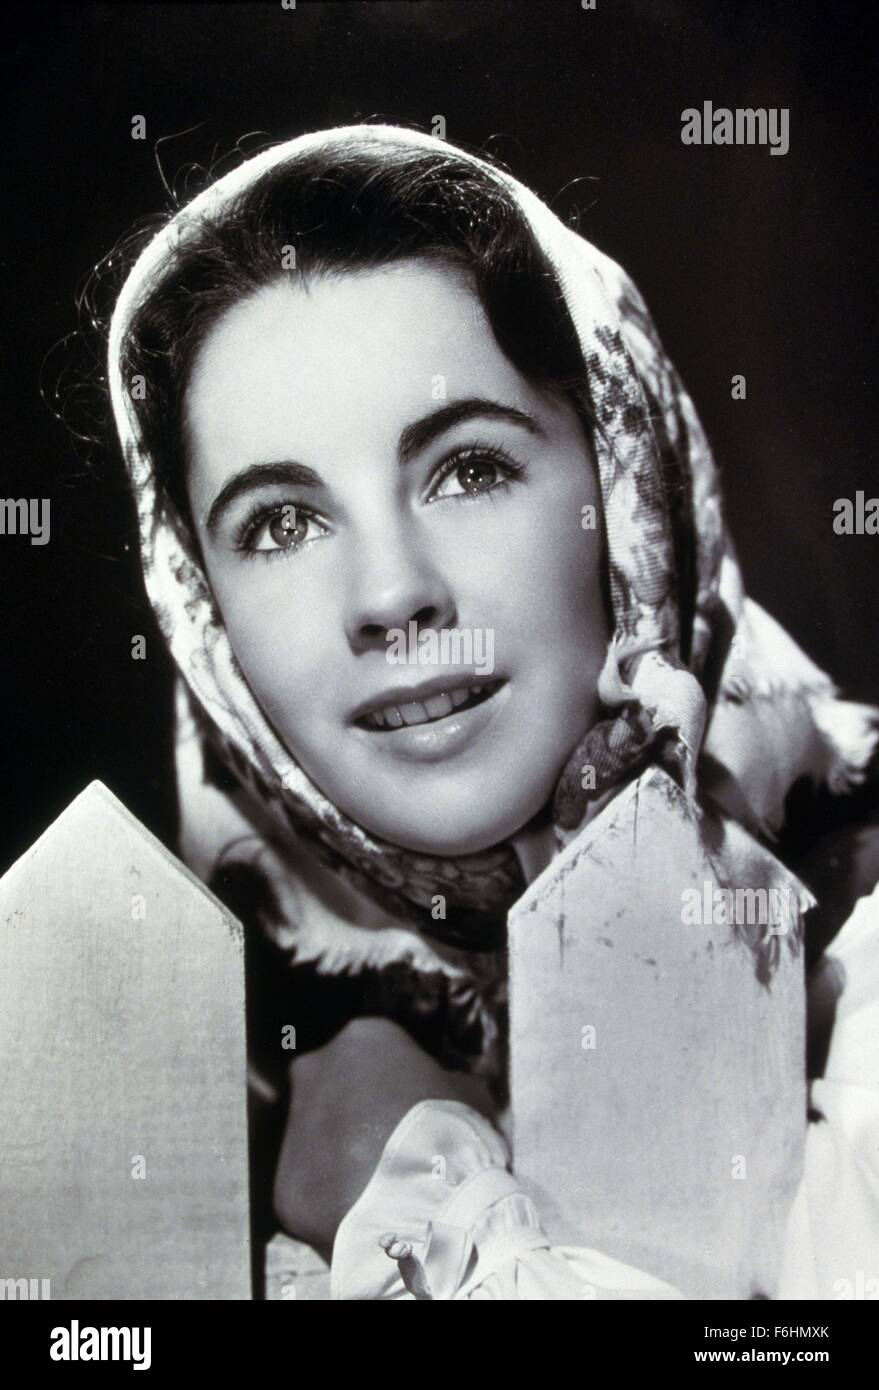 1946, Filmtitel: Mut von LASSIE, Regie: FRED WILCOX, Studio: MGM, abgebildet: ELIZABETH TAYLOR, PORTRAIT, STUDIO, HEAD Schal, LÄCHELND, LATTENZAUN. (Bild Kredit: SNAP) Stockfoto